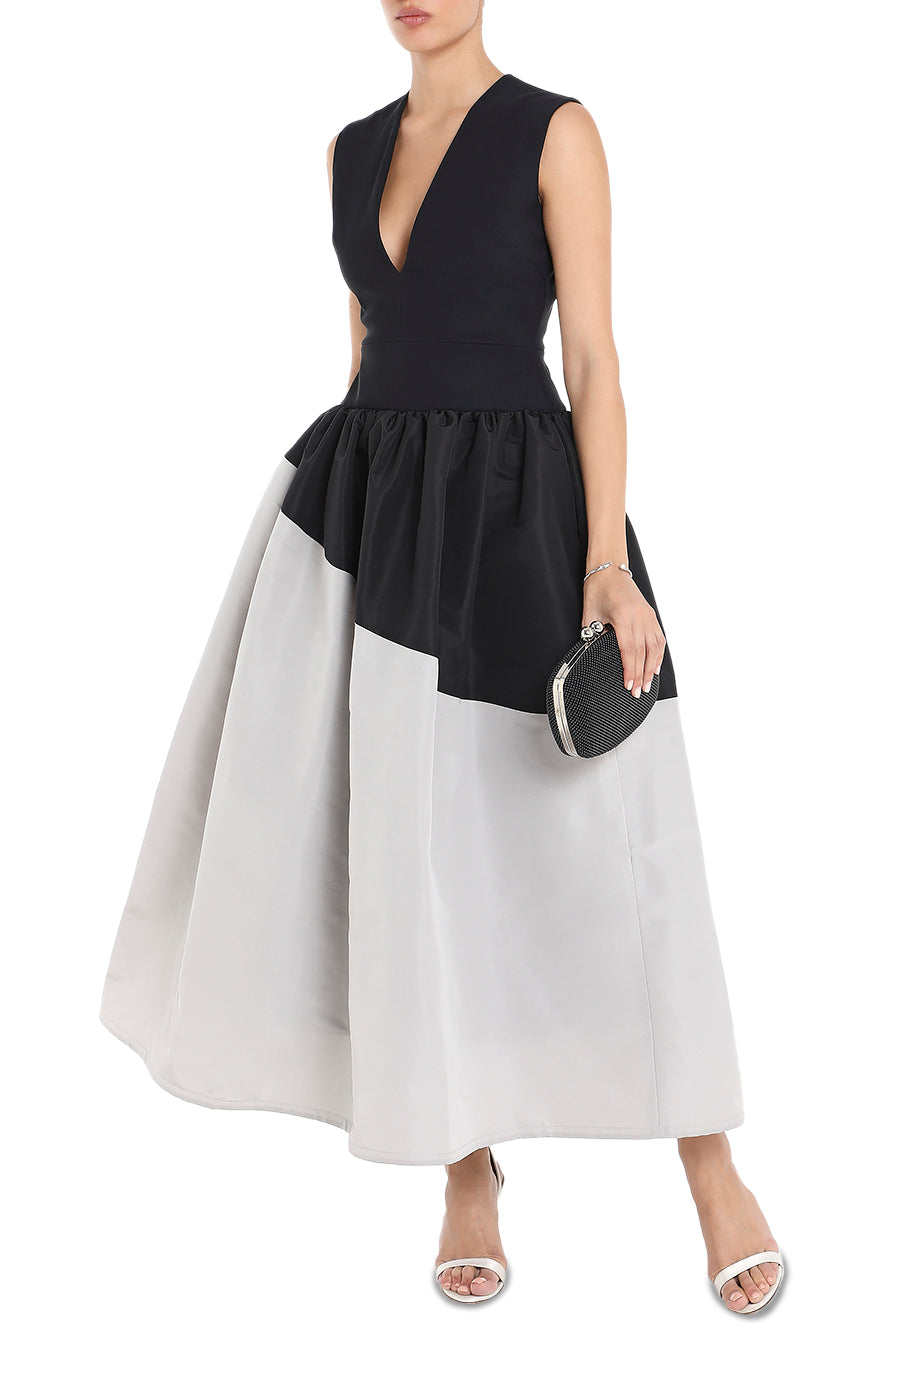 Aphne With Midi-Length Skirt